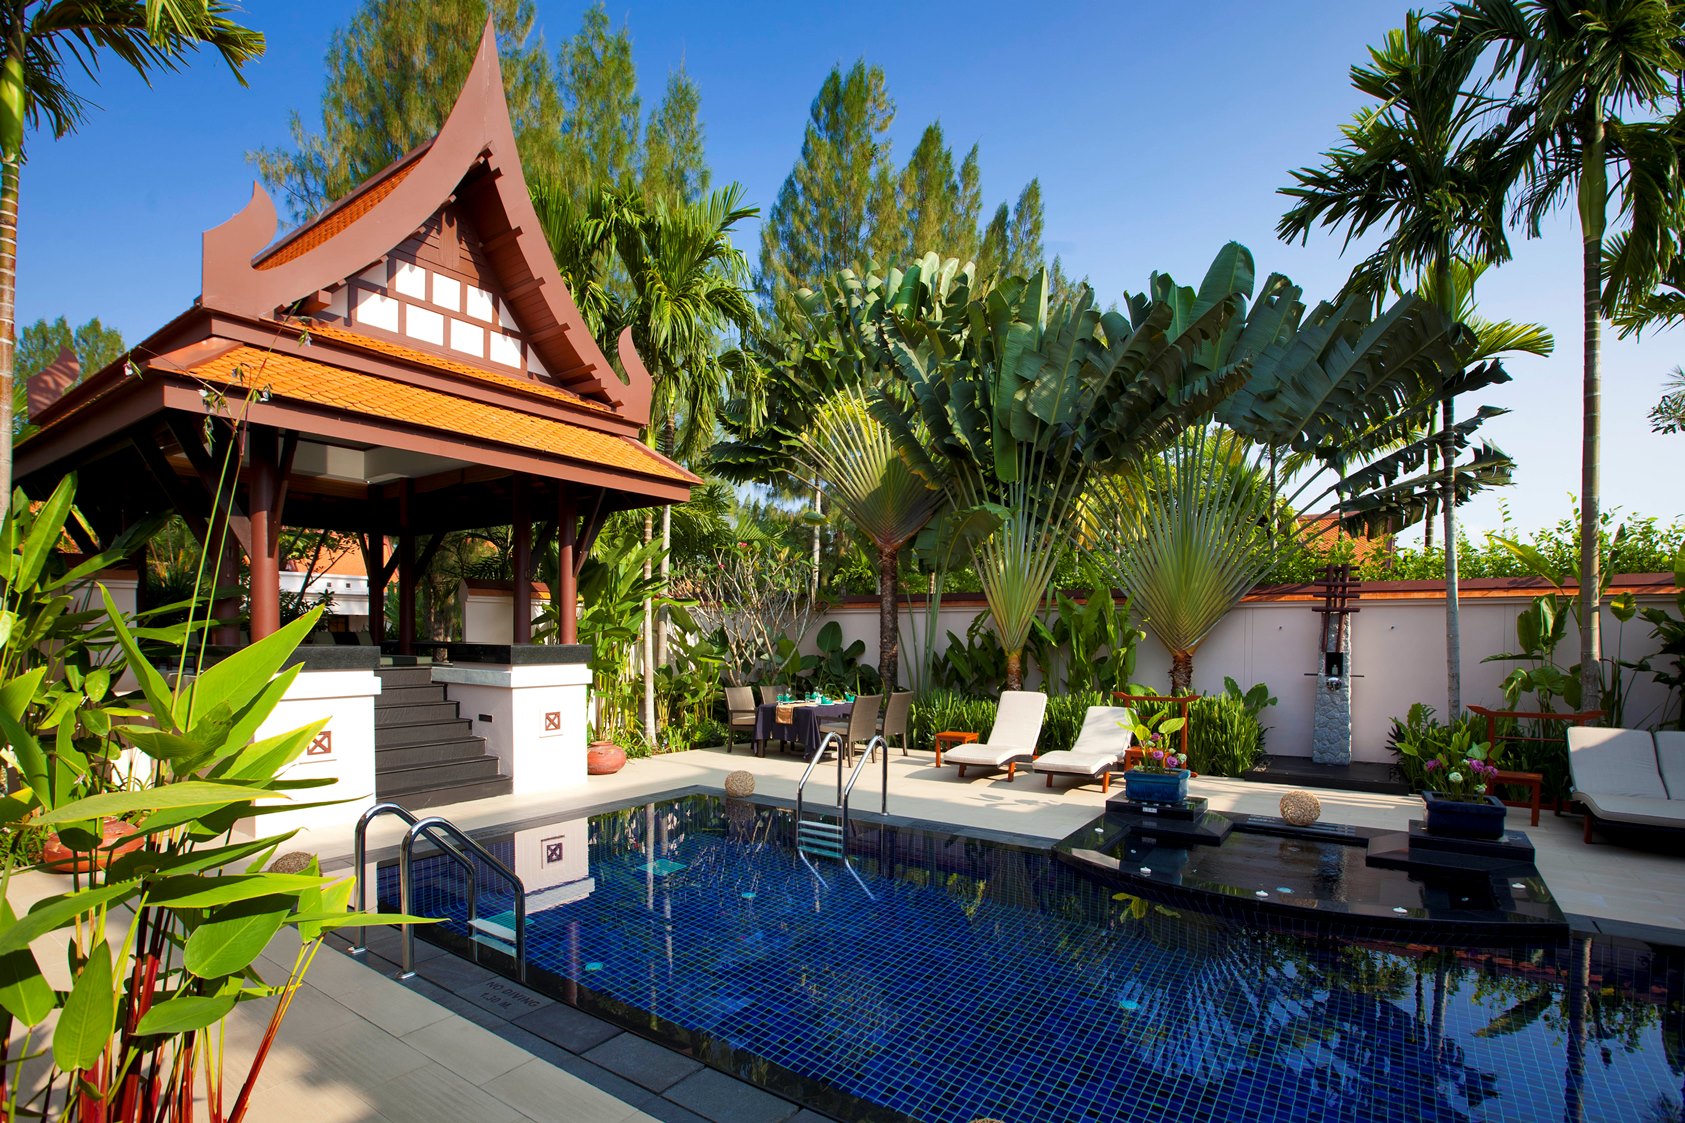 2 bedroom pool villa at banyan tree phuket, thailand